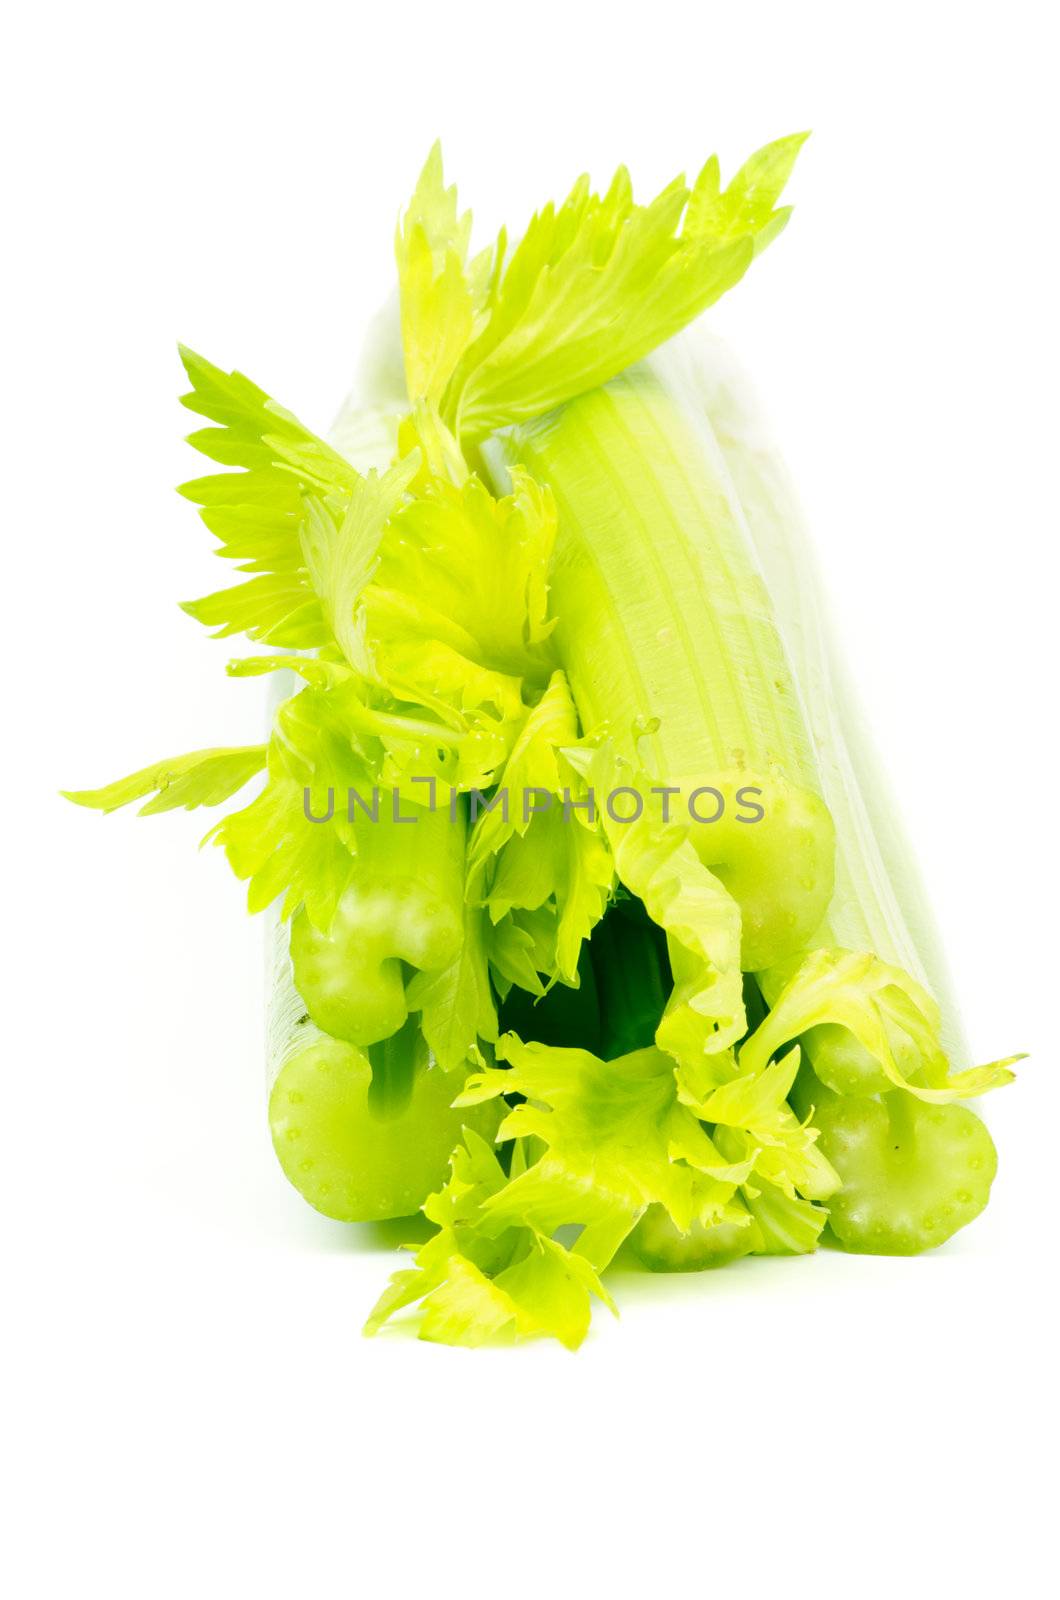 Celery by zhekos